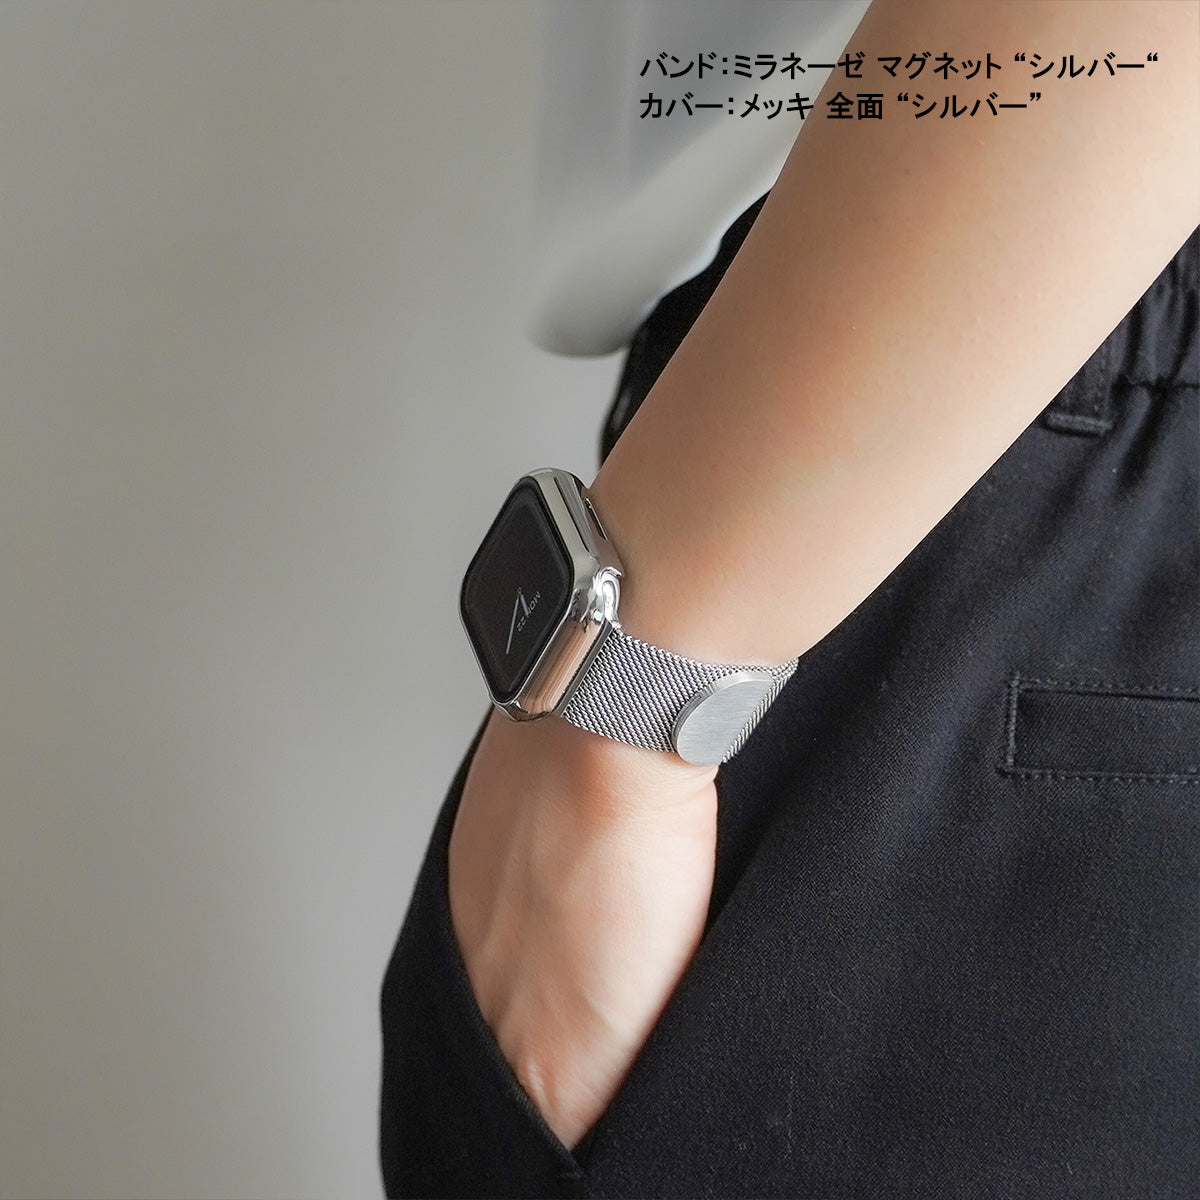 メッキ 全面 保護カバー ハードタイプ アップルウォッチ フレーム Apple Watch